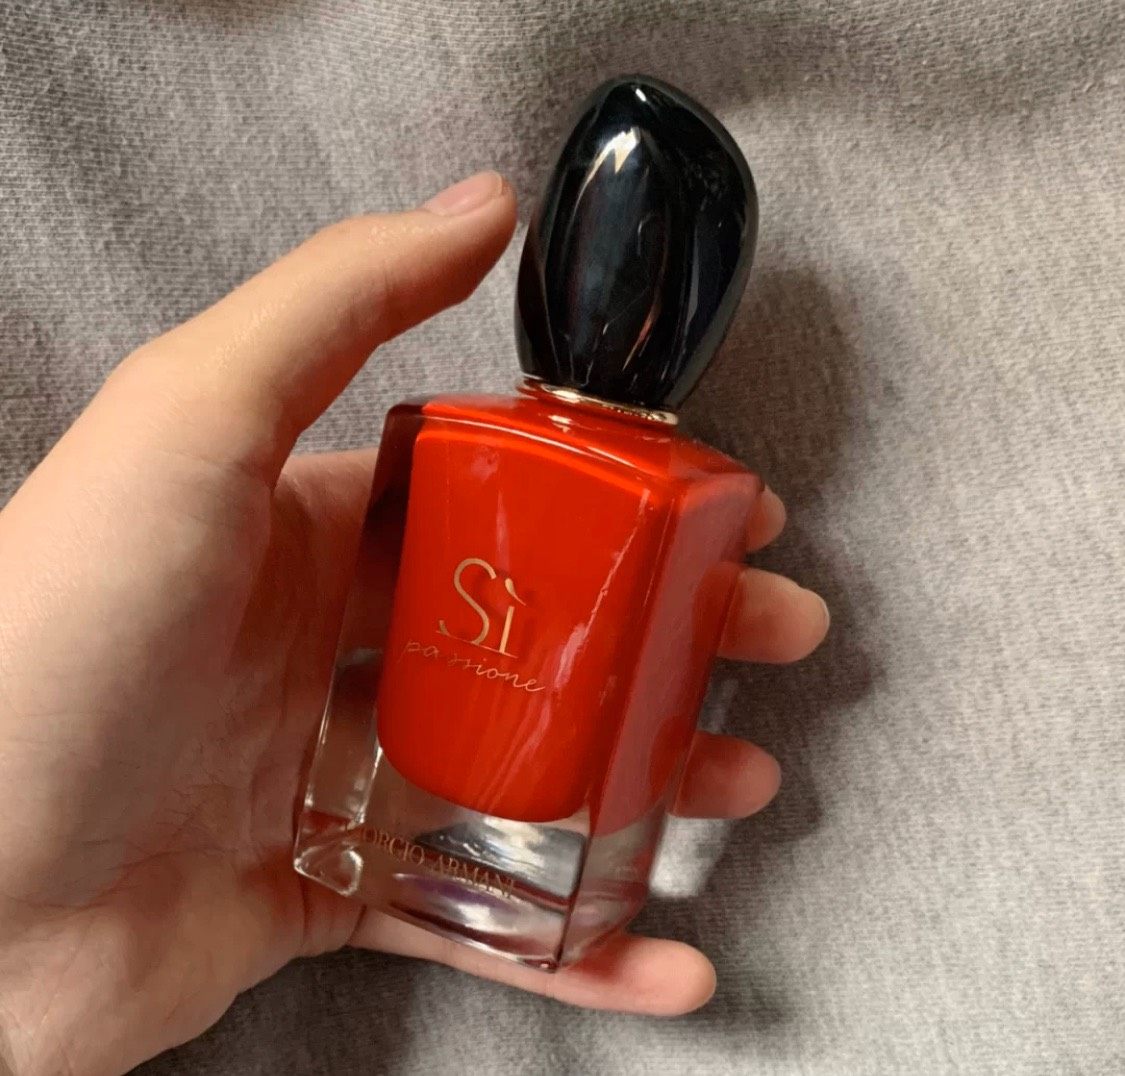 阿玛尼大红瓶挚爱si香水,它的中国红和黑金配色吸引十分吸